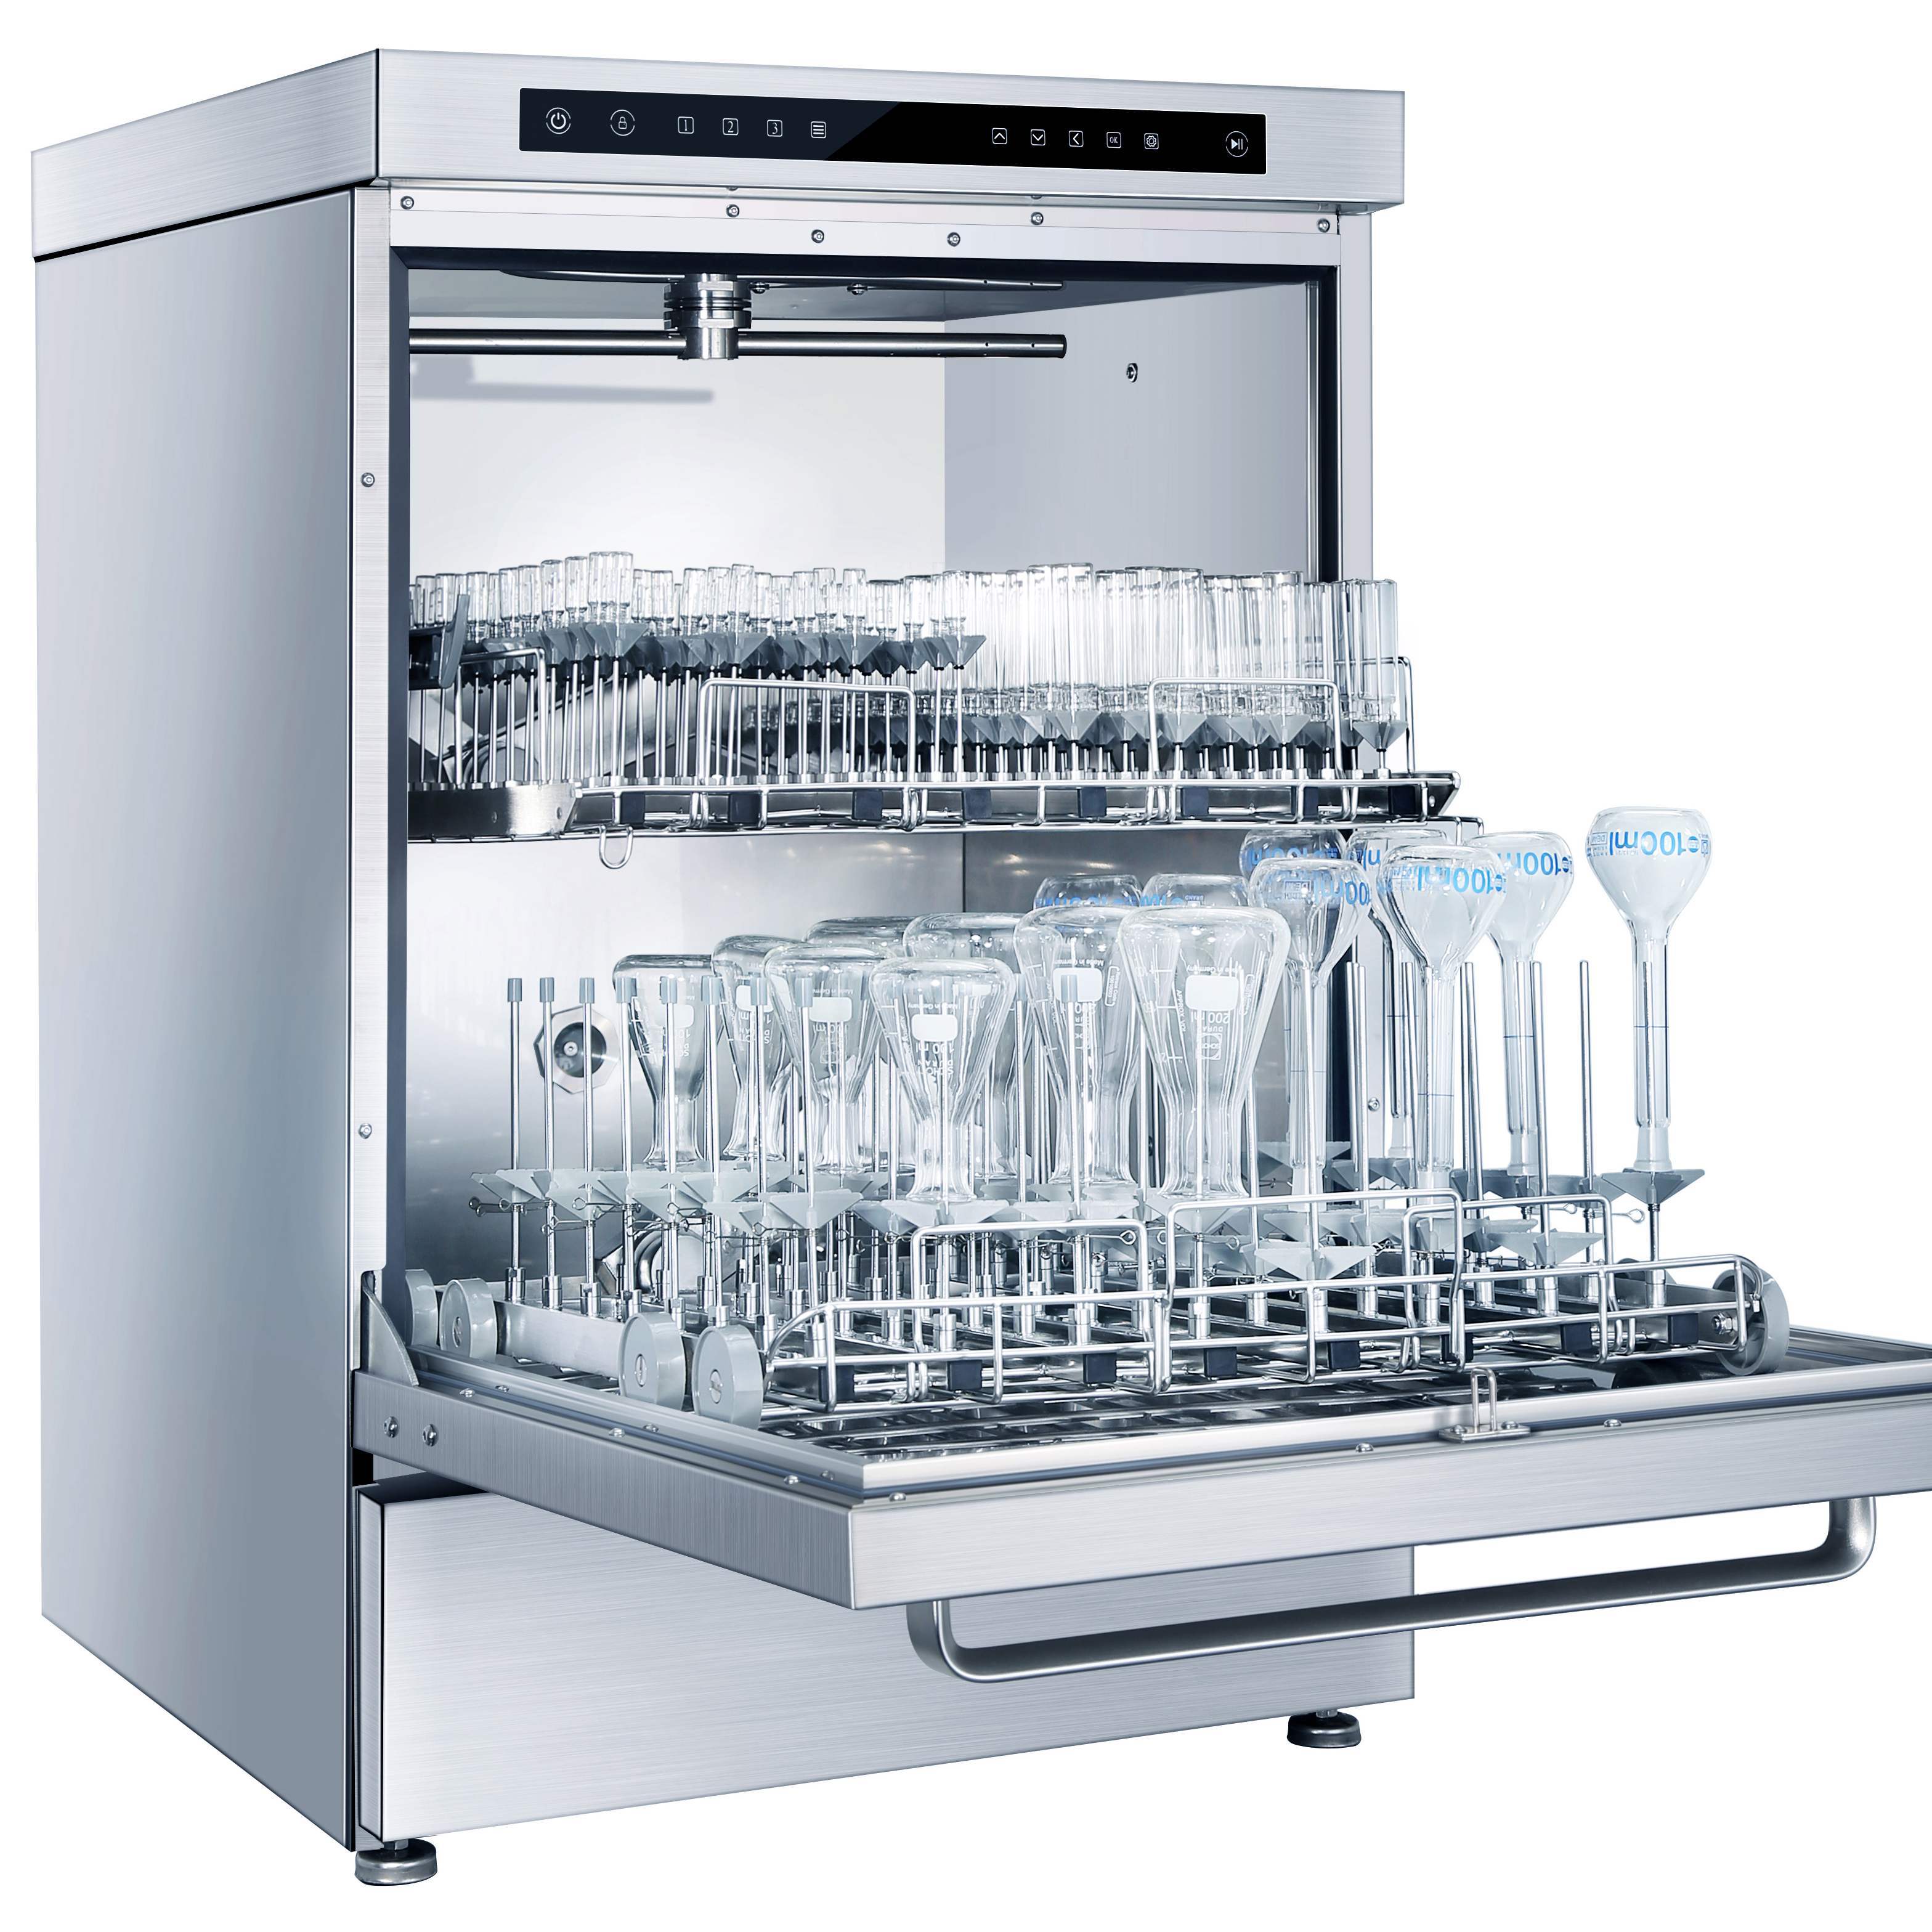 施启乐STIER 实验室自动清洗机/洗瓶机 E4000